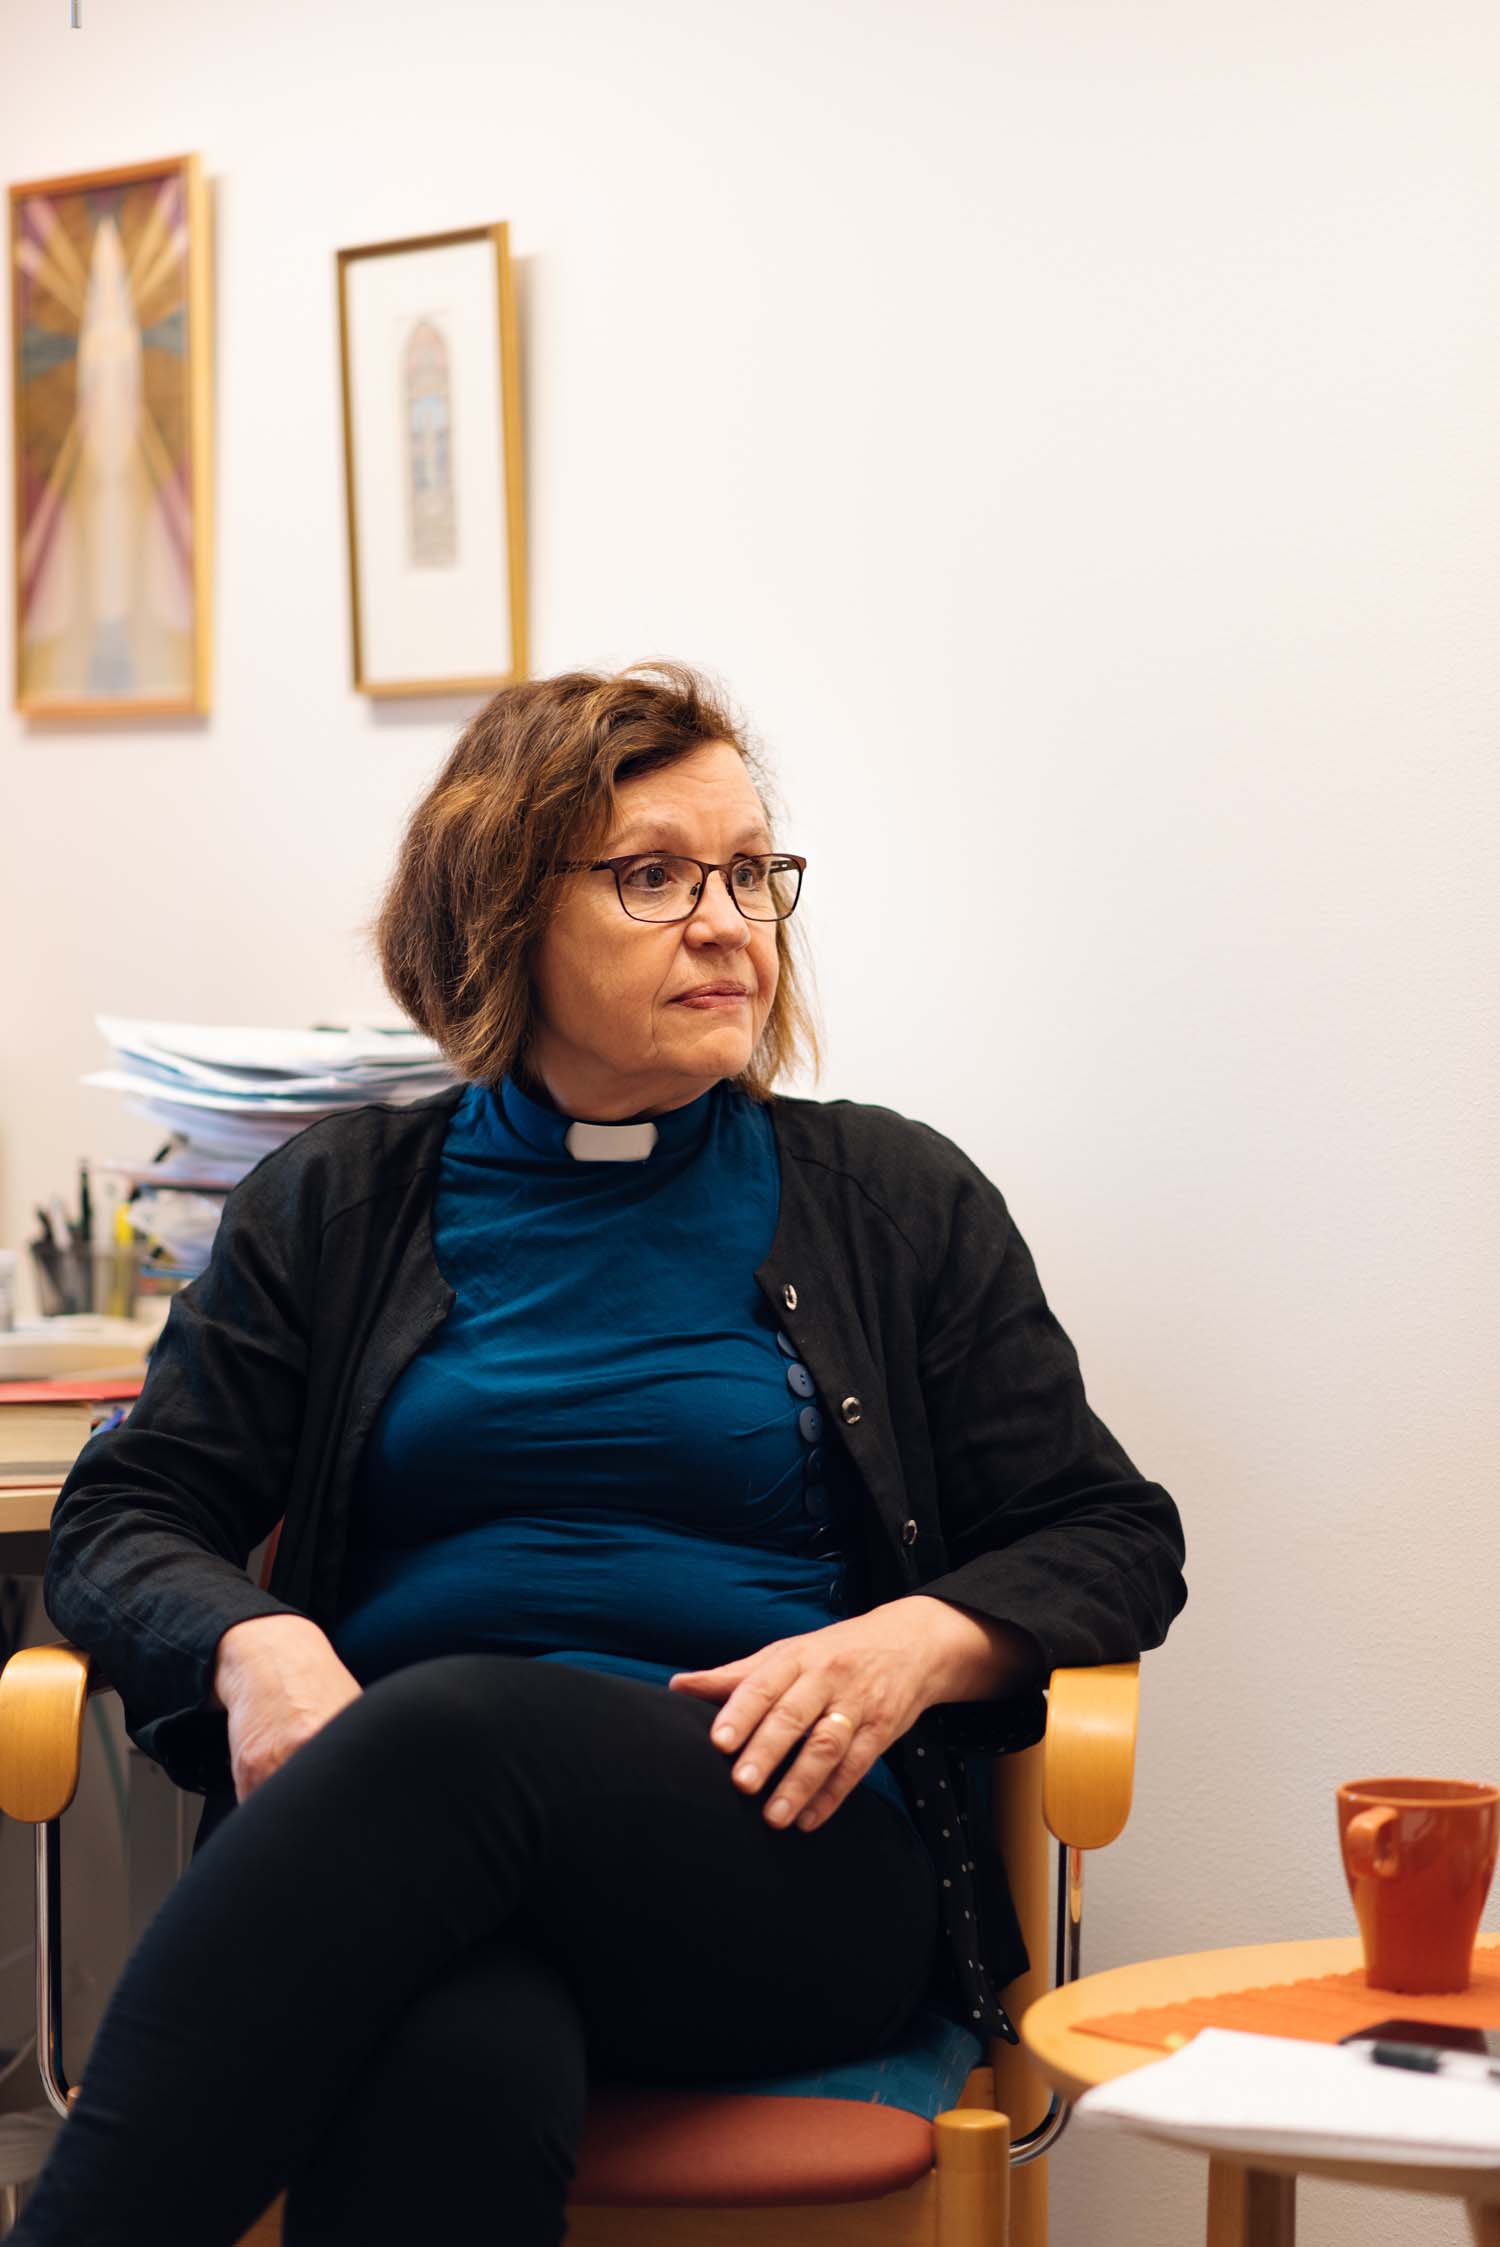 En kvinna med prästkrage sitter i en fåtölj och tittar åt höger ut bild. Hon har en blå tröja och halvkort, brunt hår.